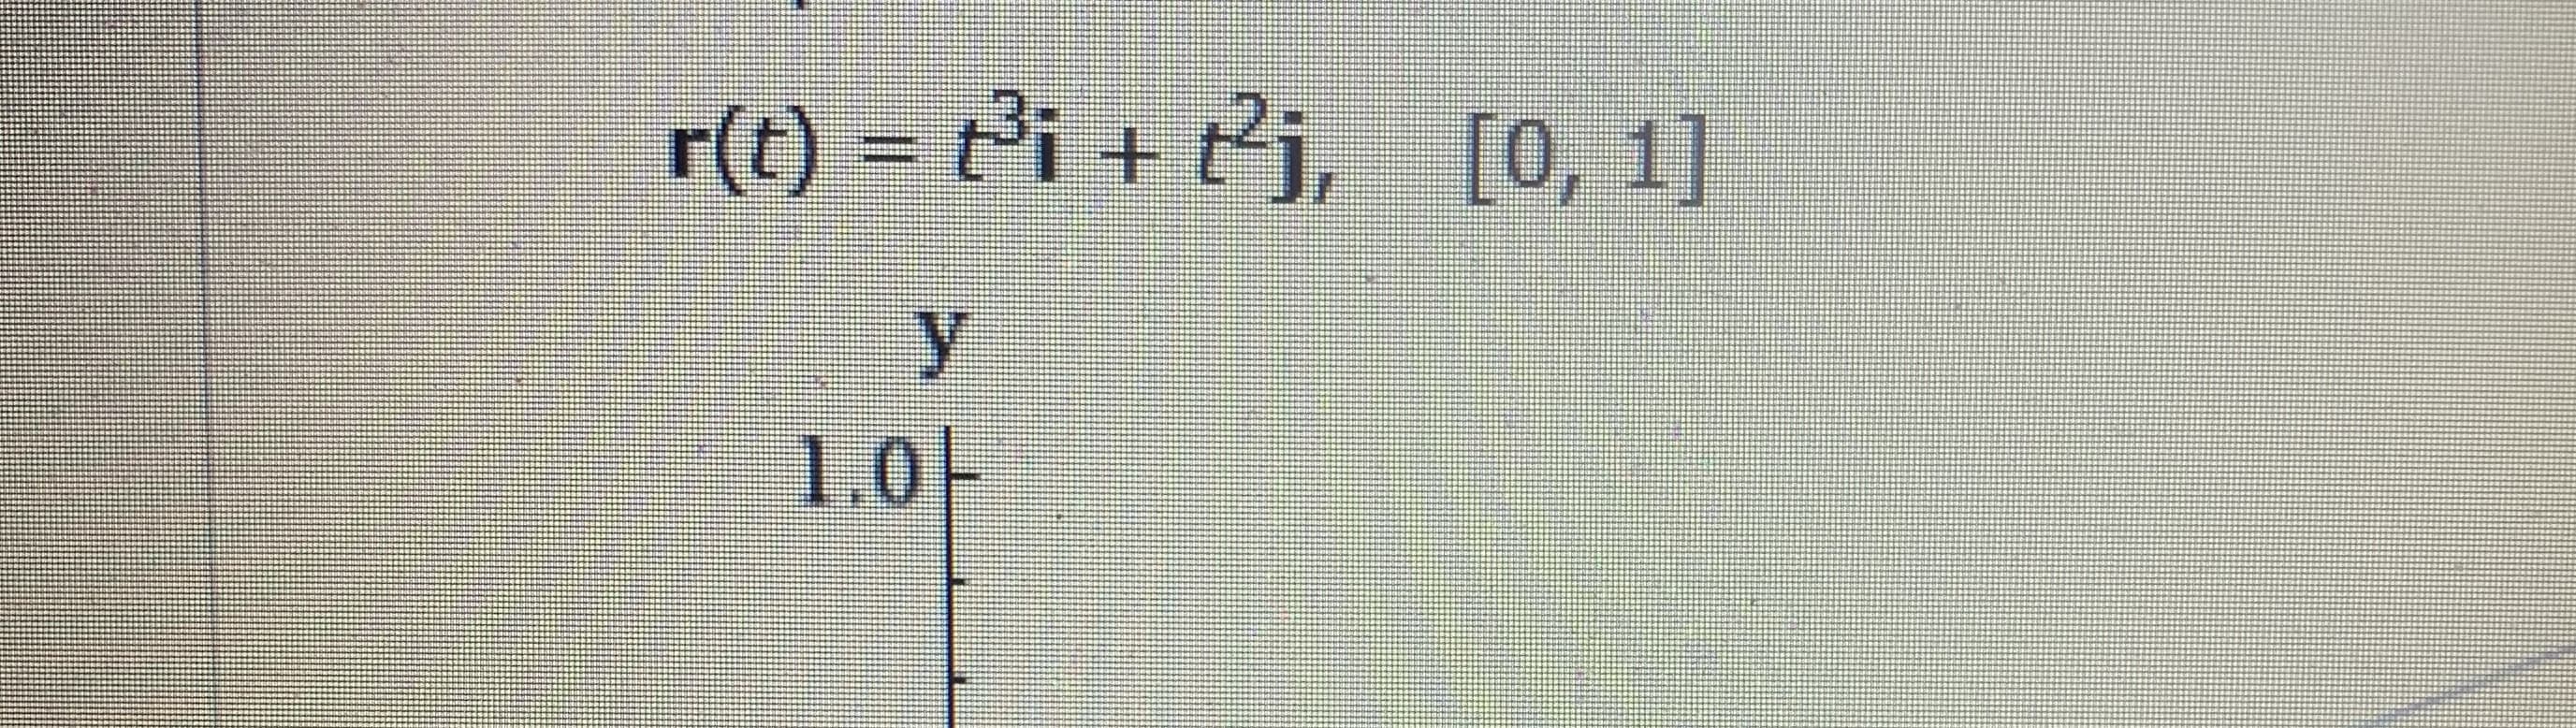 r(t) = ti + tj, [0, 1]
